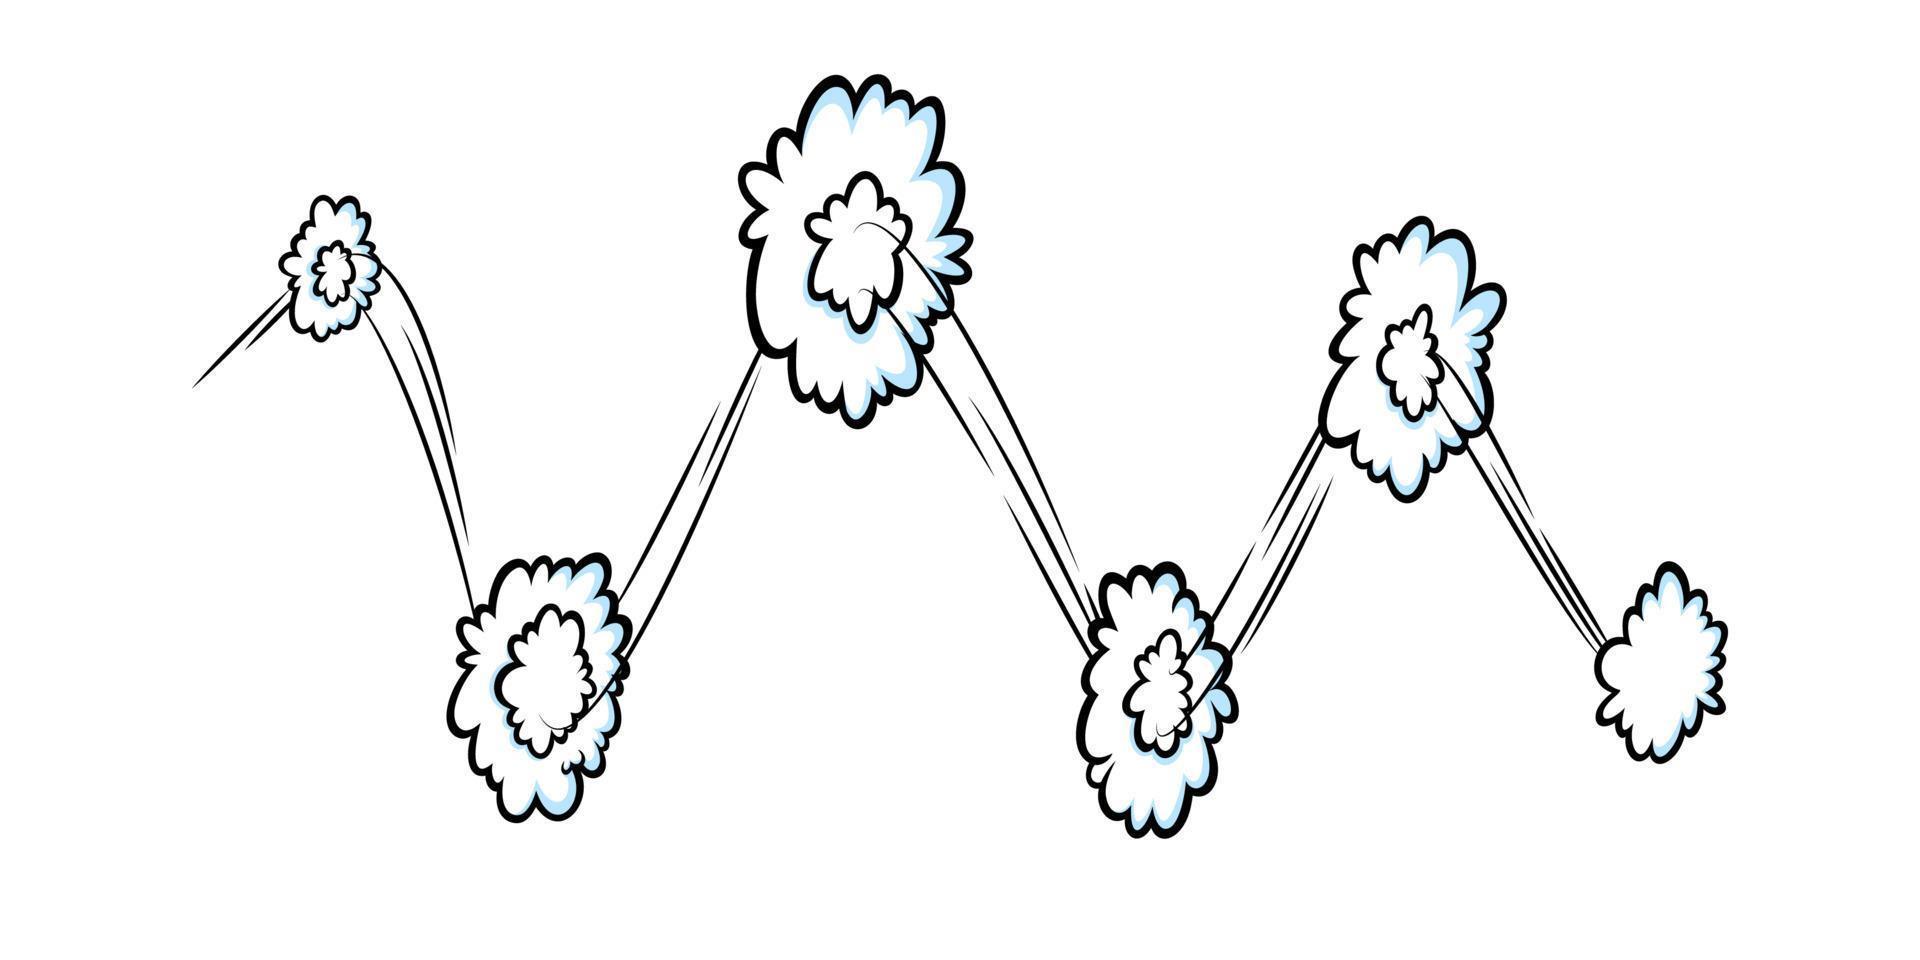 komisk hastighet effekt med moln. komisk moln med rörelse spår rader. vektor illustration